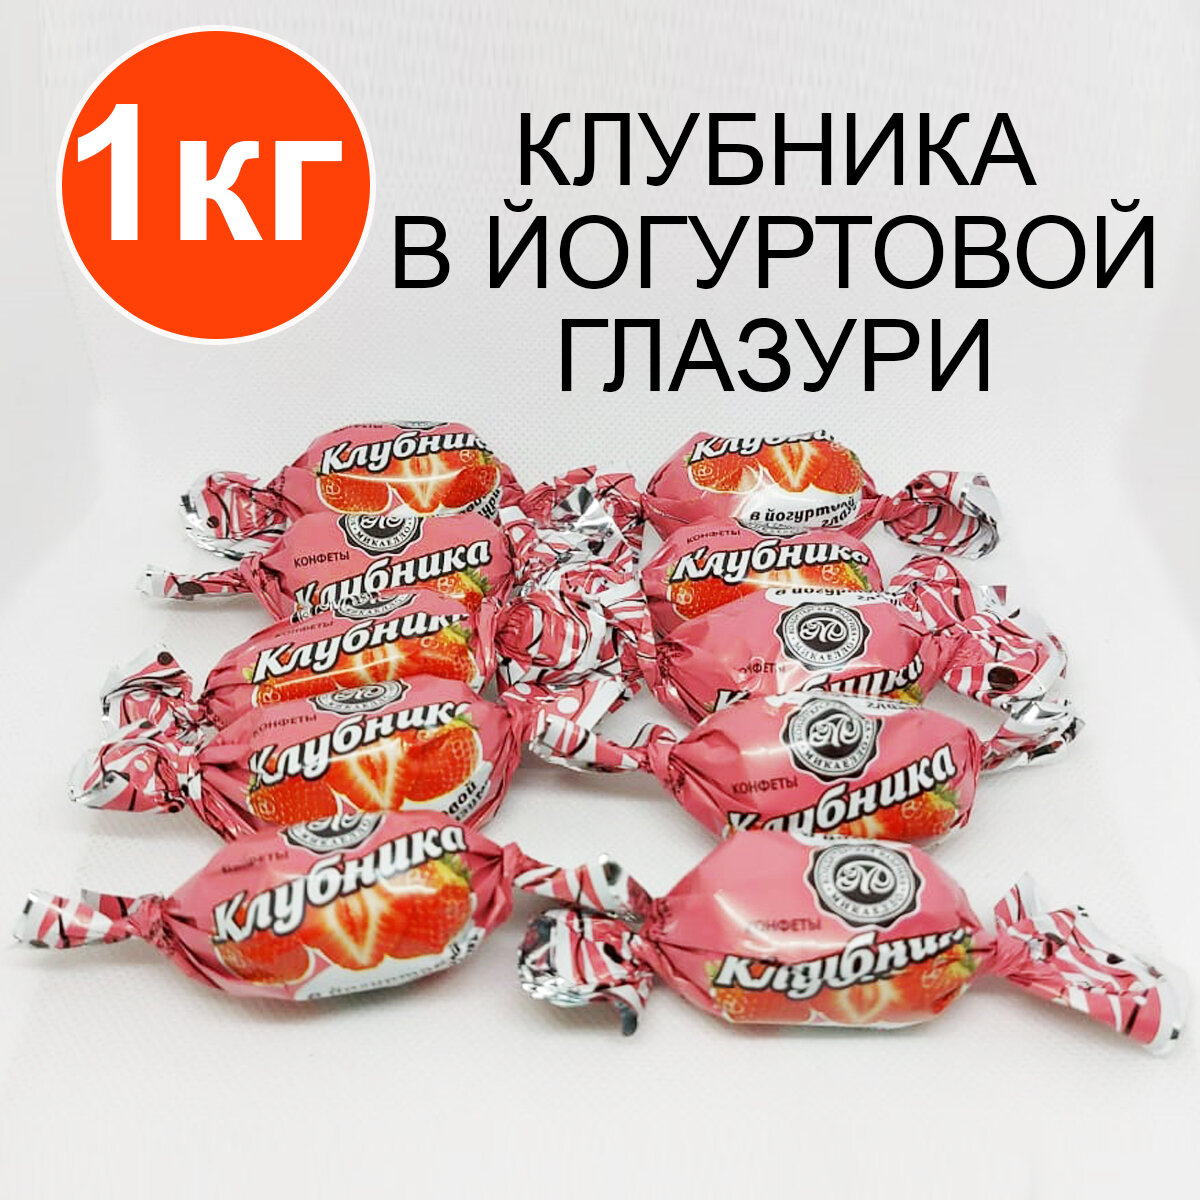 Конфеты "Клубника в йогуртовой глазури" "Микаелло", 1 кг